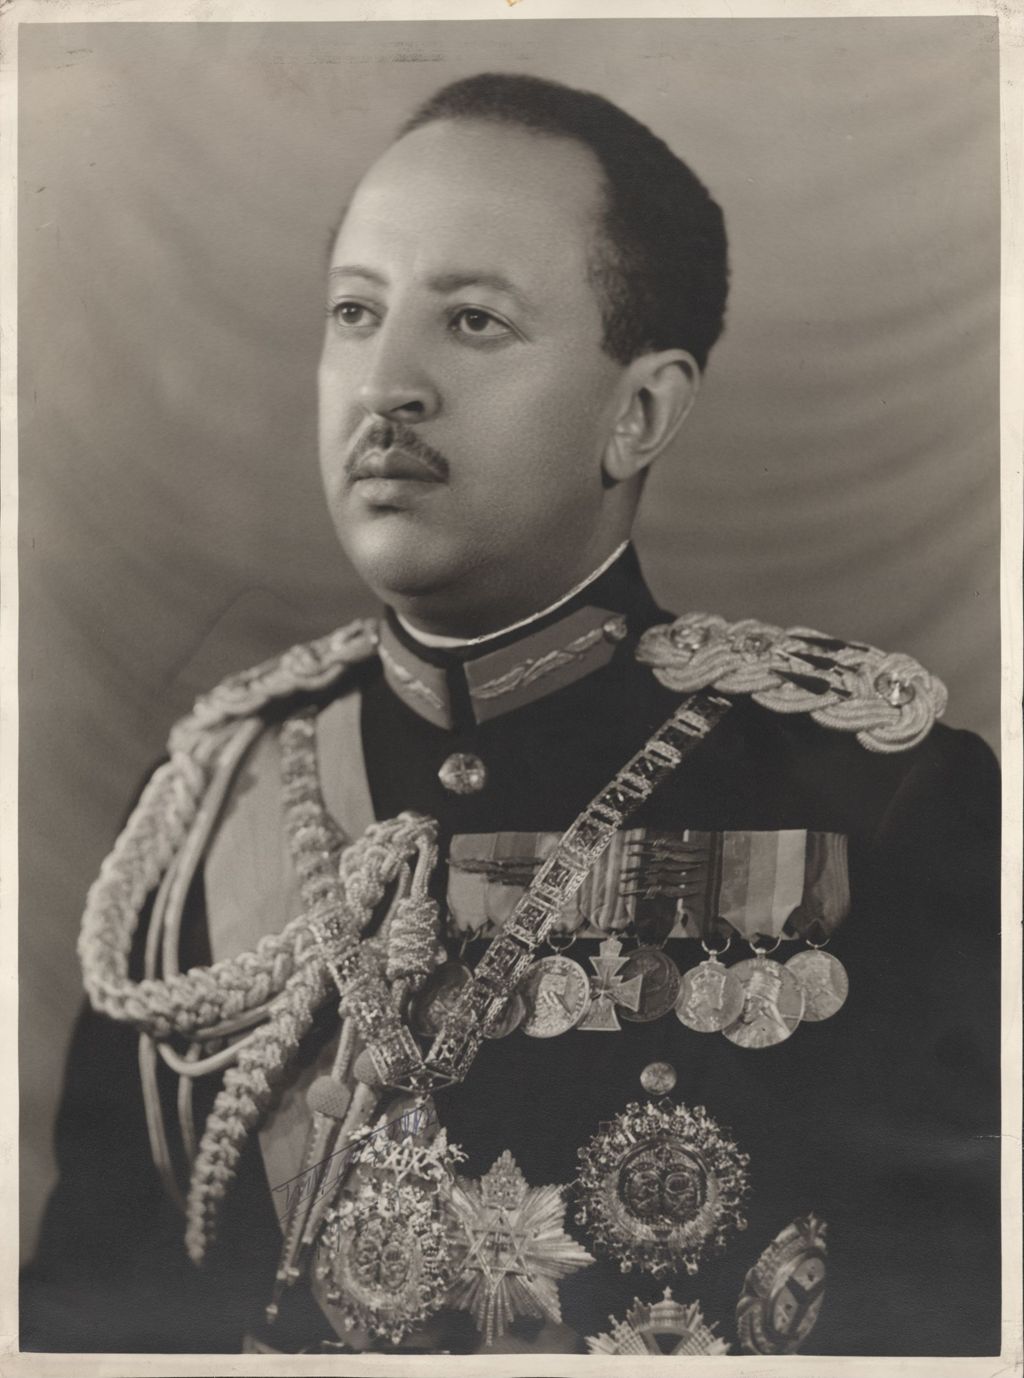 Miniature of Member of Ethiopian royalty